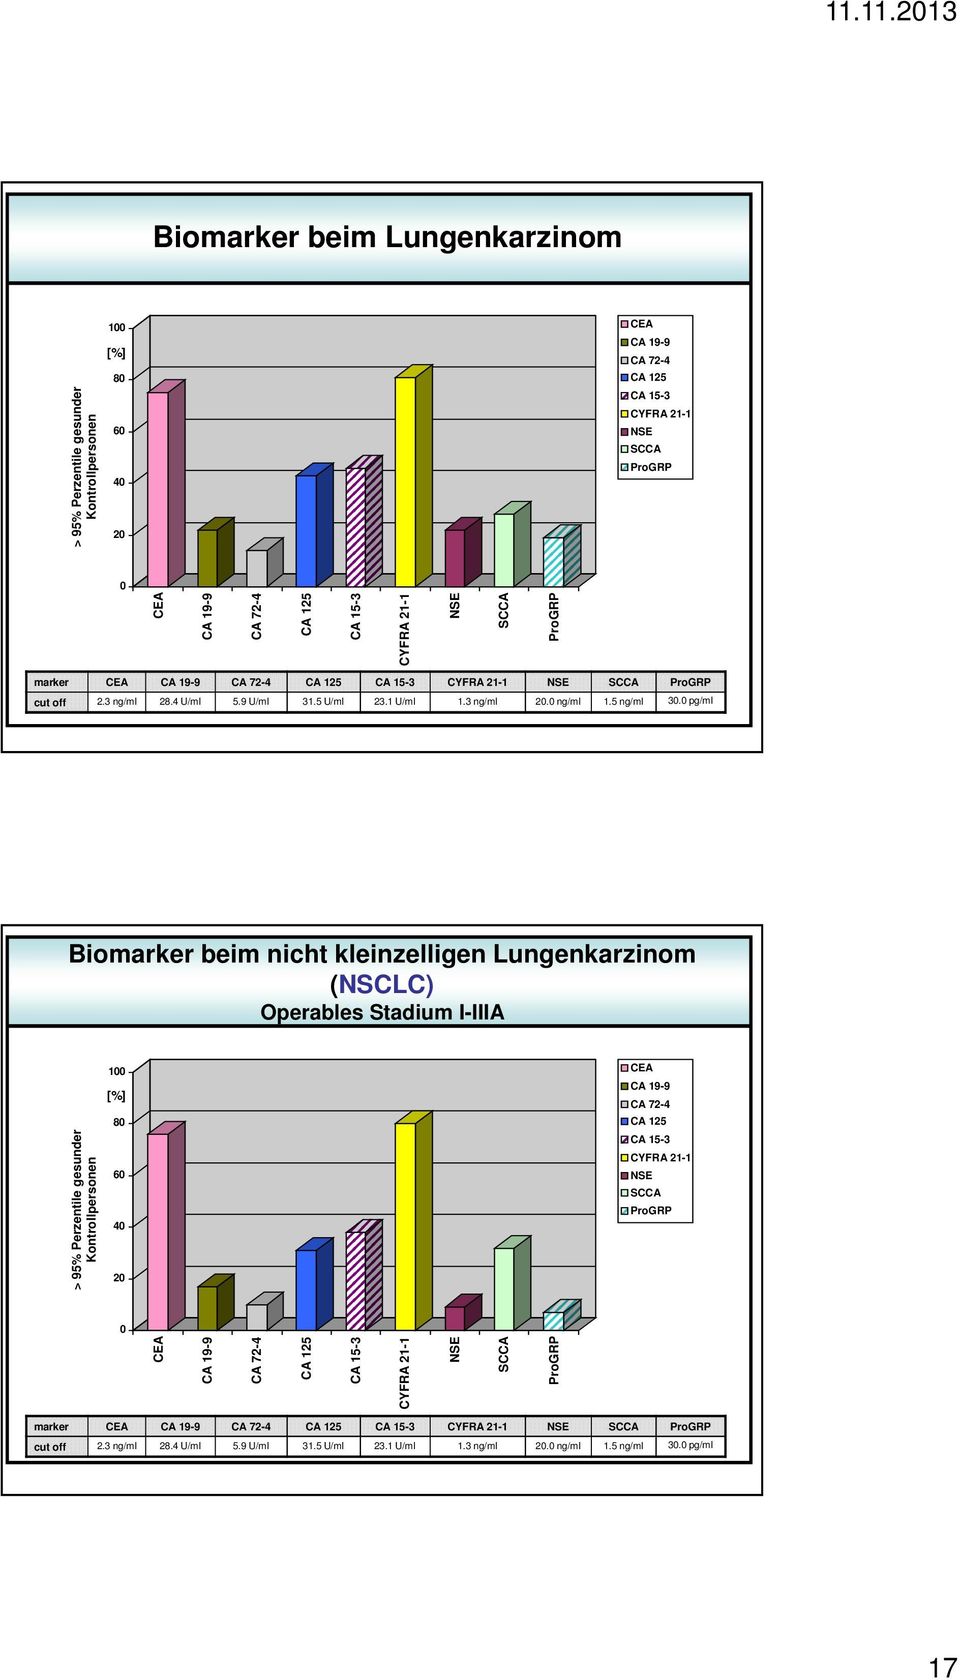 pg/ml Biomarker beim nicht kleinzelligen Lungenkarzinom (NSCLC) Operables Stadium I-IIIA > 95% Perzentile gesunder Kontrollpersonen 1 [%] 8 6 4 2 CEA CA 19-9 CA 72-4 CA 125 CA 15-3 CYFRA 21-1 NSE